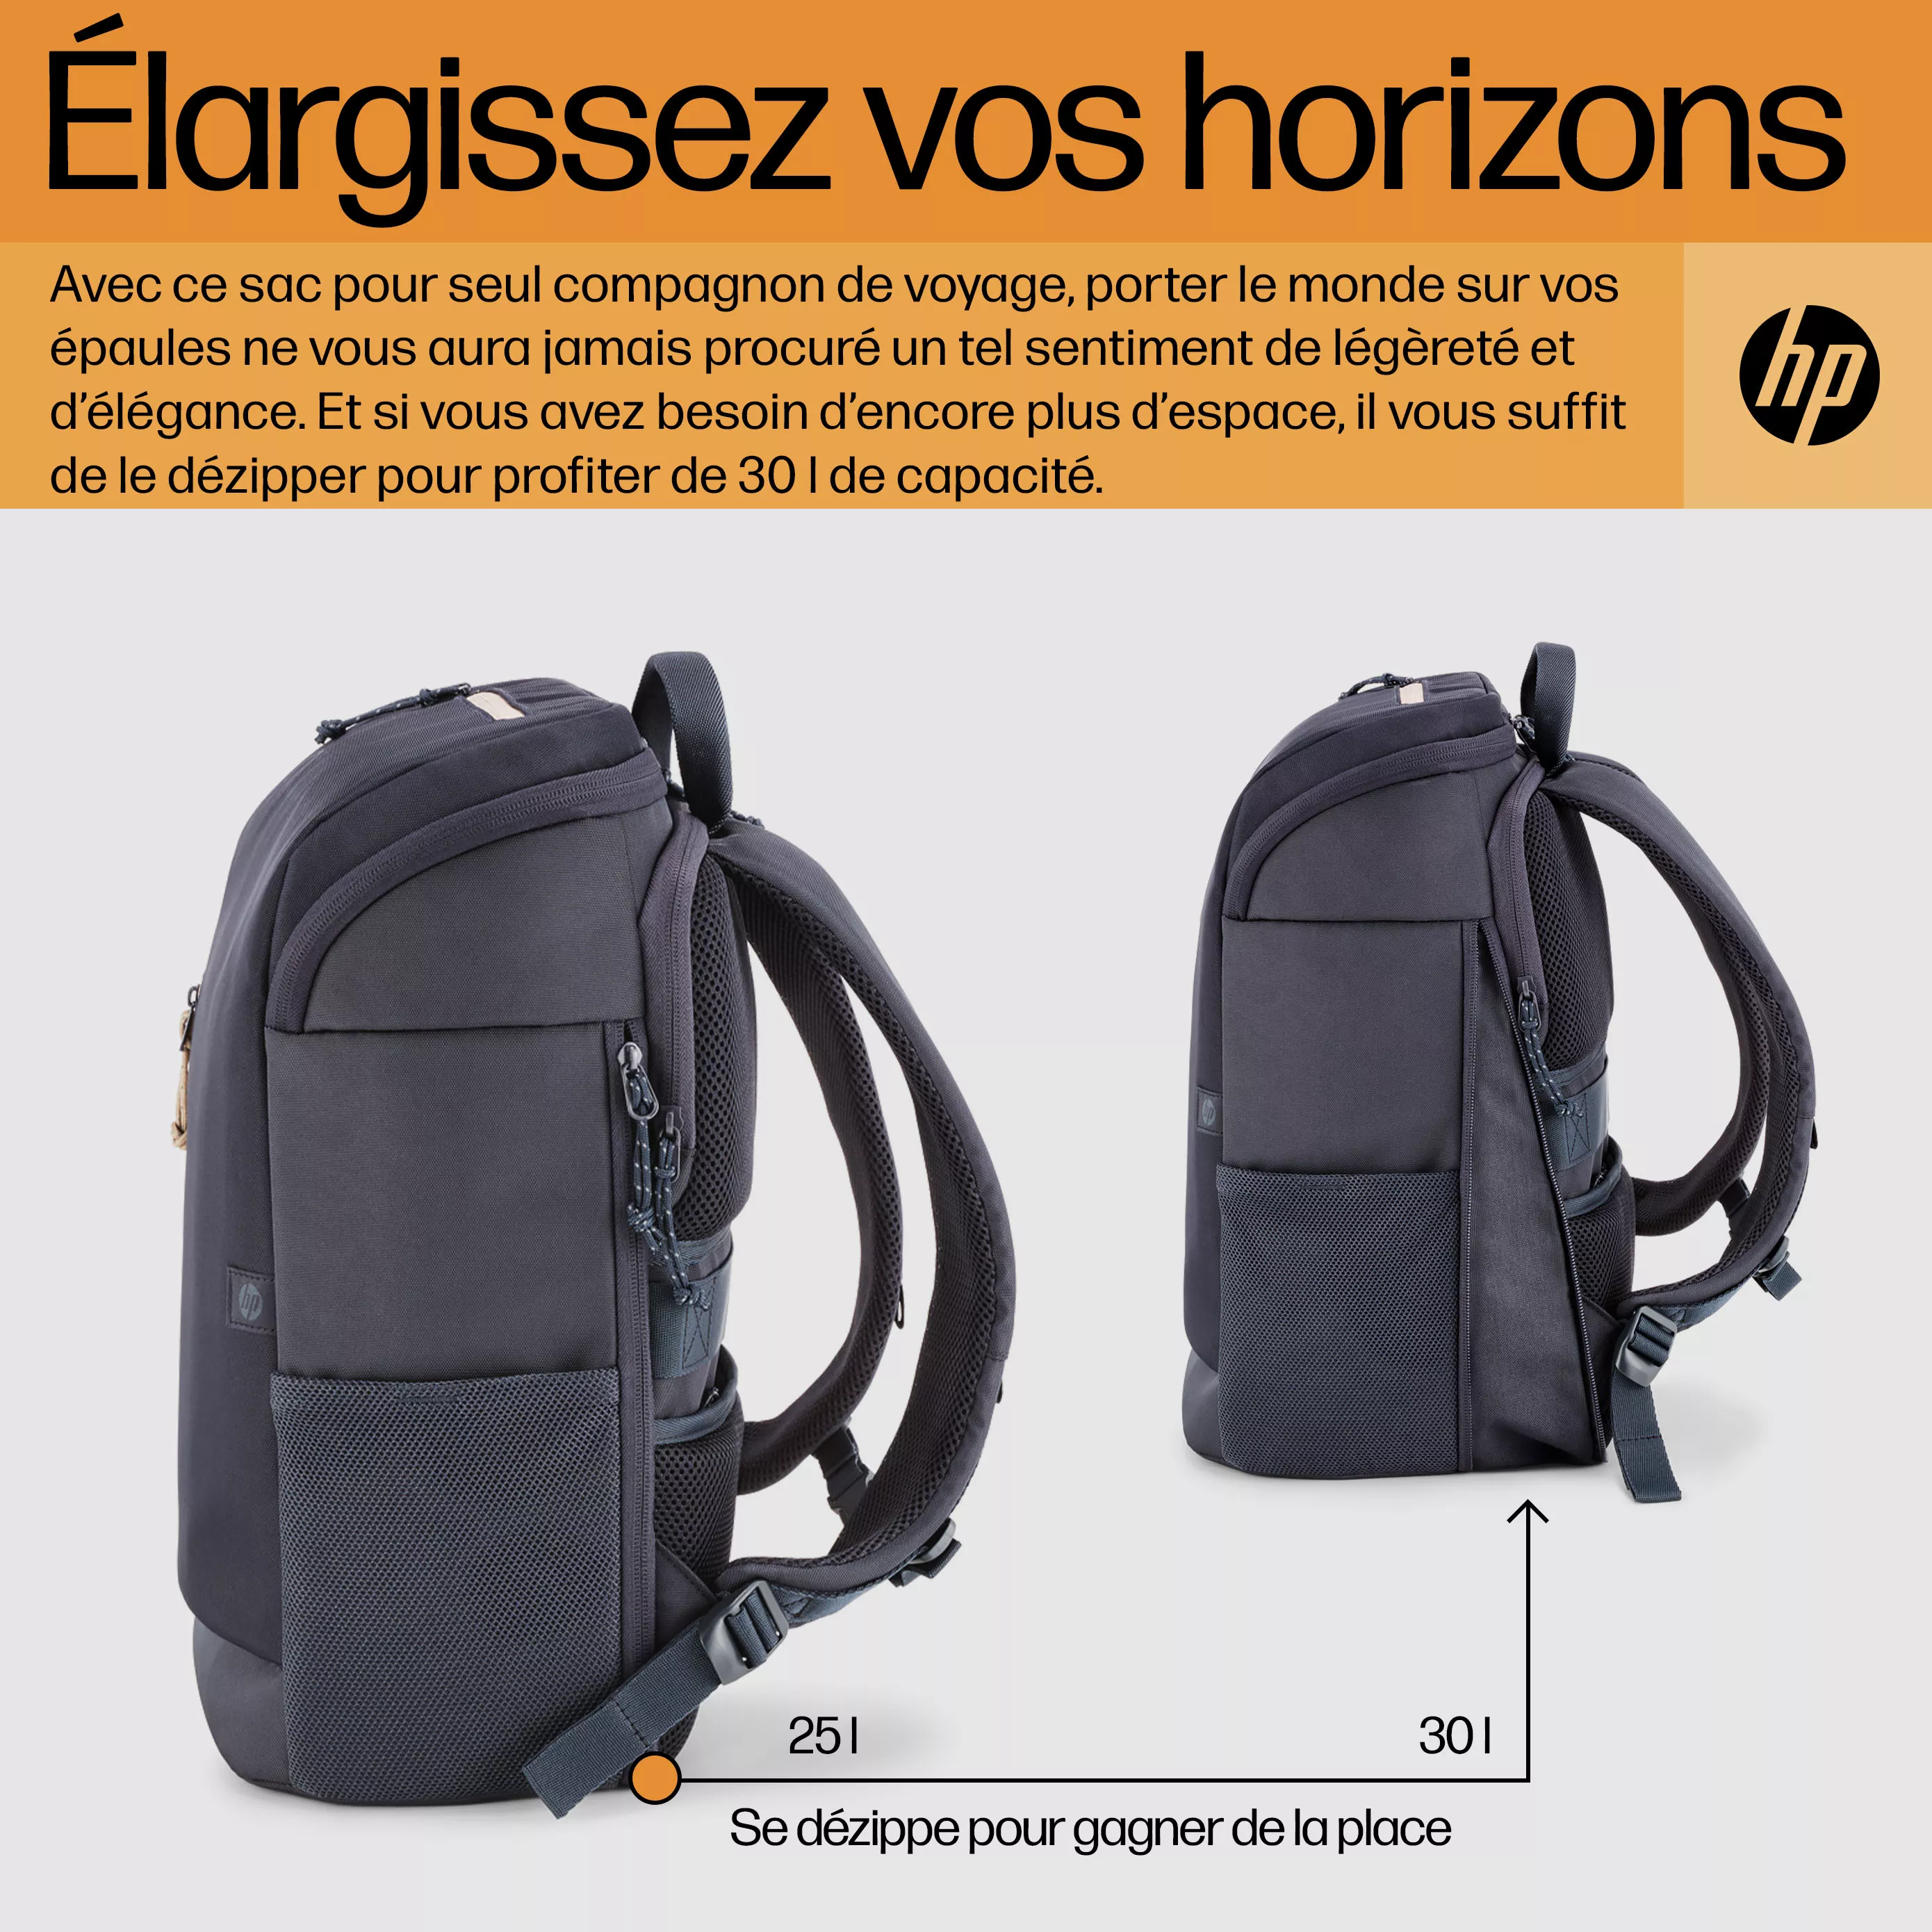 Vente Sac à dos pour ordinateur portable HP Travel HP au meilleur prix - visuel 10